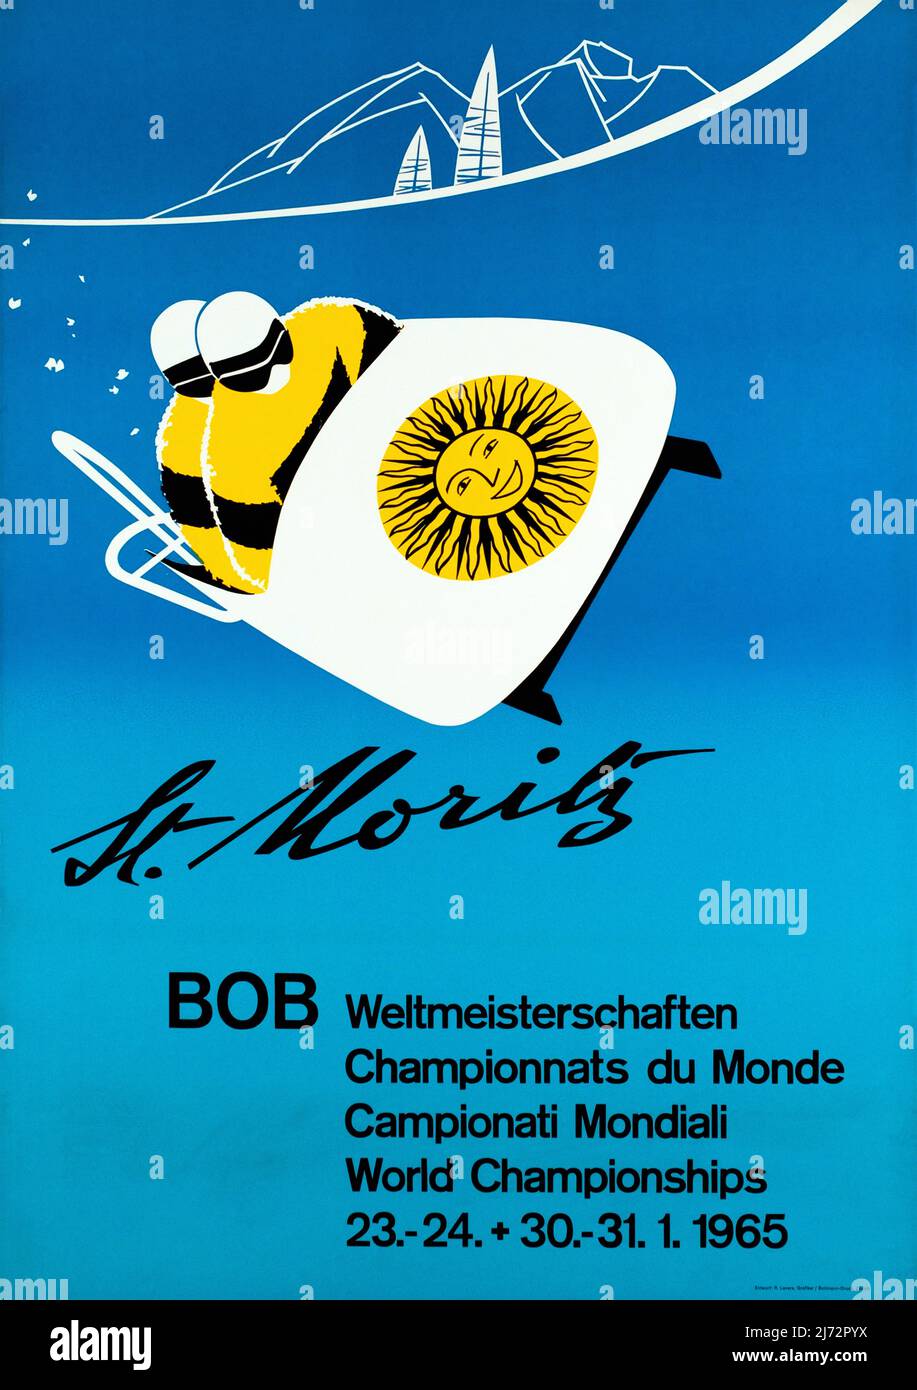 VINTAGE 1960s Travel Poster St. Moritz, Championnats du monde de Bob Rudolph LEVERS 1965 Stock Photo